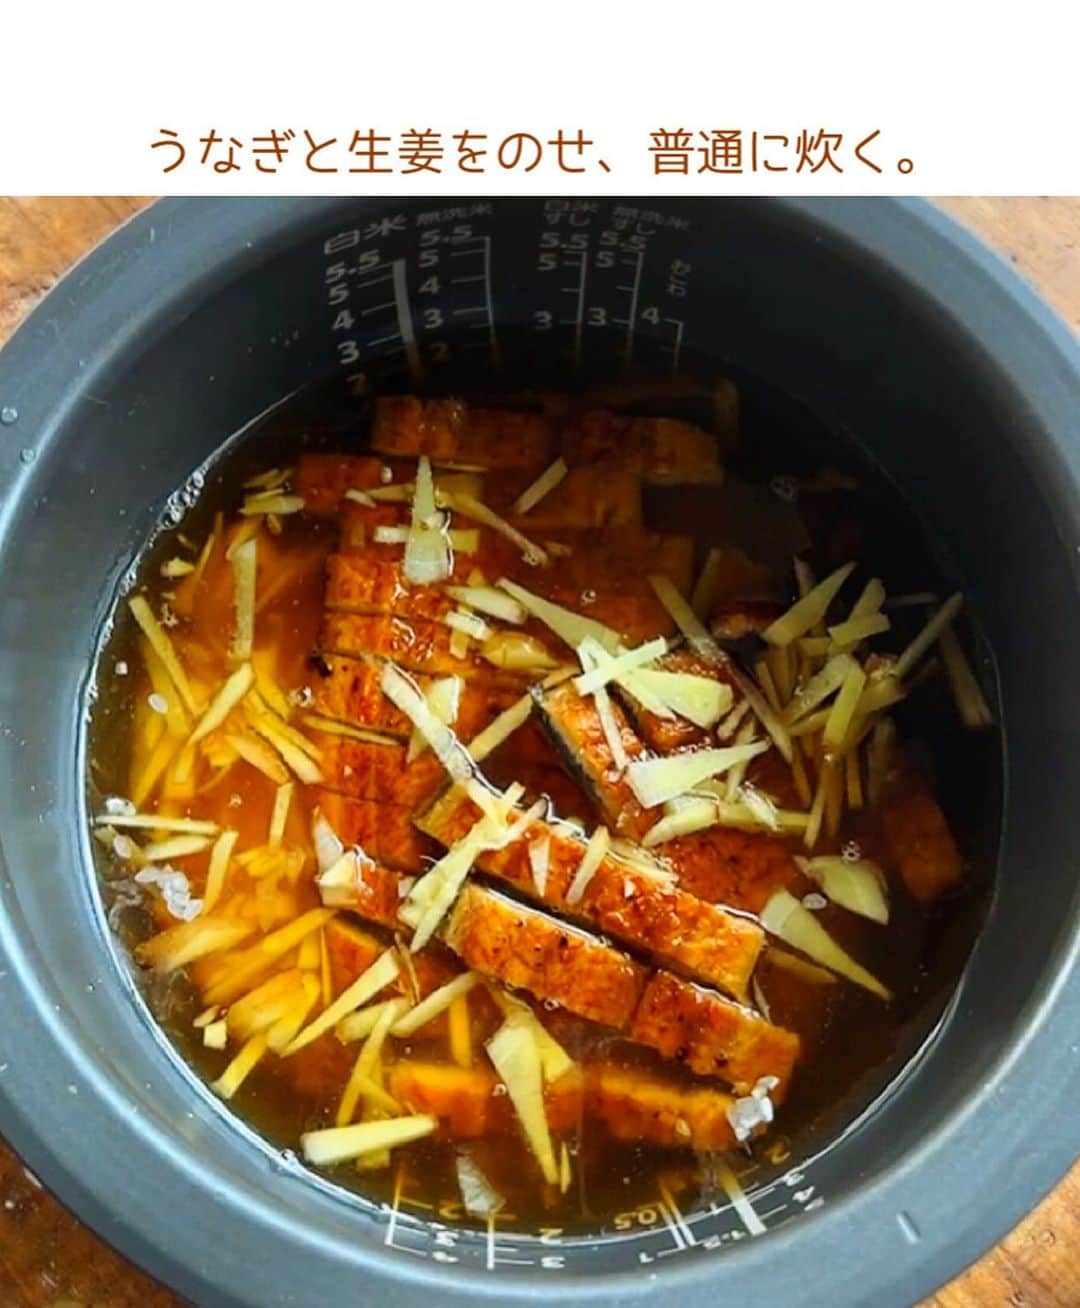 Mizuki【料理ブロガー・簡単レシピ】さんのインスタグラム写真 - (Mizuki【料理ブロガー・簡単レシピ】Instagram)「・土用の丑の日に💕 ⁡ ［#レシピ ］ ーーーーーーーーーーー 蒲焼き1枚で家族分！ うなぎの炊き込みご飯 ーーーーーーーーーーー ⁡ ⁡ ⁡ おはようございます☺️ ⁡ 明日7/30(日)は#土用の丑の日 ✨ そこで今日ご紹介させていただくのは そんな日にもおすすめの \ うなぎの炊き込みご飯 / ⁡ ※昨年リールでアップしたやつです🙇‍♀️ ⁡ うなぎの蒲焼き1枚でも 炊き込んだらみんなで楽しめる💕 しかも味付けは 蒲焼きのたれ(市販品)で失敗なし👌 ご飯にもうま味が染みて どこを食べてもおいしいですよ〜😋 (うなぎが得意ではない私もコレはいける！) ⁡ とっても簡単にできるので よかったらお試しくださいね✨ ⁡ ⁡ ⁡ ⋱⋰ ⋱⋰ ⋱⋰ ⋱⋰ ⋱⋰ ⋱⋰ ⋱⋰ ☑︎簡単・時短・節約レシピ更新中 @mizuki_31cafe ⁡ ☑︎謎の暮らし＆変なライブ垢 @mizuki_kurashi ⋱⋰ ⋱⋰ ⋱⋰ ⋱⋰ ⋱⋰ ⋱⋰ ⋱⋰ ⁡ ⁡ ⁡ ＿＿＿＿＿＿＿＿＿＿＿＿＿＿＿＿＿＿＿ 【4人分くらい】 米...2合 生姜...1かけ うなぎの蒲焼き(市販品)...1枚 蒲焼きのたれ(市販品)...100g ⁡ 1.生姜は千切りにする。うなぎの蒲焼きは8mm幅に切る。 2.炊飯器に米と蒲焼きのたれを入れ、水を2合の線まで入れて混ぜる。 3.うなぎと生姜をのせ、普通に炊く。 ￣￣￣￣￣￣￣￣￣￣￣￣￣￣￣￣￣￣￣ ⁡ ⁡ 《ポイント》 ♦︎普通の炊飯コースで炊いてください♩ ♦︎炊き上がったら、うなぎの身をあまり崩さないように混ぜるor身を取り分けてからご飯を混ぜ、仕上げにトッピングすると見た目が豪華に仕上がります♩ ♦︎お茶漬けにしてもおいしいです♩ ♦︎生姜が味の決め手になるので、大きめの1かけ使いました♩ ♦︎このレシピは著書【やみつきごはん】に掲載しているものです♩ ⁡ ⁡ ⁡ ⁡ ⁡ ⁡ ⋱⋰ ⋱⋰ ⋱⋰ ⋱⋰ ⋱⋰ ⋱⋰ ⋱⋰  愛用している調理器具・器など   #楽天ROOMに載せてます ‎𐩢𐩺  (ハイライトから飛べます🕊️) ⋱⋰ ⋱⋰ ⋱⋰ ⋱⋰ ⋱⋰ ⋱⋰ ⋱⋰ ⁡ ⁡ ⁡ ⁡ ⁡ ⁡ ✼••┈┈┈┈┈••✼••┈┈┈┈┈••✼ 今日のごはんこれに決まり！ ‎𓊆#Mizukiのレシピノート 500品𓊇 ✼••┈┈┈┈┈••✼••┈┈┈┈┈••✼ ⁡ ˗ˏˋ おかげさまで25万部突破 ˎˊ˗ 料理レシピ本大賞準大賞を受賞しました✨ ⁡ 6000点の中からレシピを厳選し まさかの【500レシピ掲載】 肉や魚のメインおかずはもちろん 副菜、丼、麺、スープ、お菓子 ハレの日のレシピ、鍋のレシピまで 全てこの一冊で完結 𓌉◯𓇋 (全国の書店・ネット書店で発売中) ⁡ ⁡ ⁡ ⁡ ⁡ ⁡ #うなぎの炊き込みご飯m #うなぎ #鰻  #炊き込みごはん #土用の丑 #節約料理 #簡単料理  #時短料理 #料理 #mizukiレシピ  #アルモンデ #時短レシピ #節約レシピ #簡単レシピ」7月29日 8時20分 - mizuki_31cafe